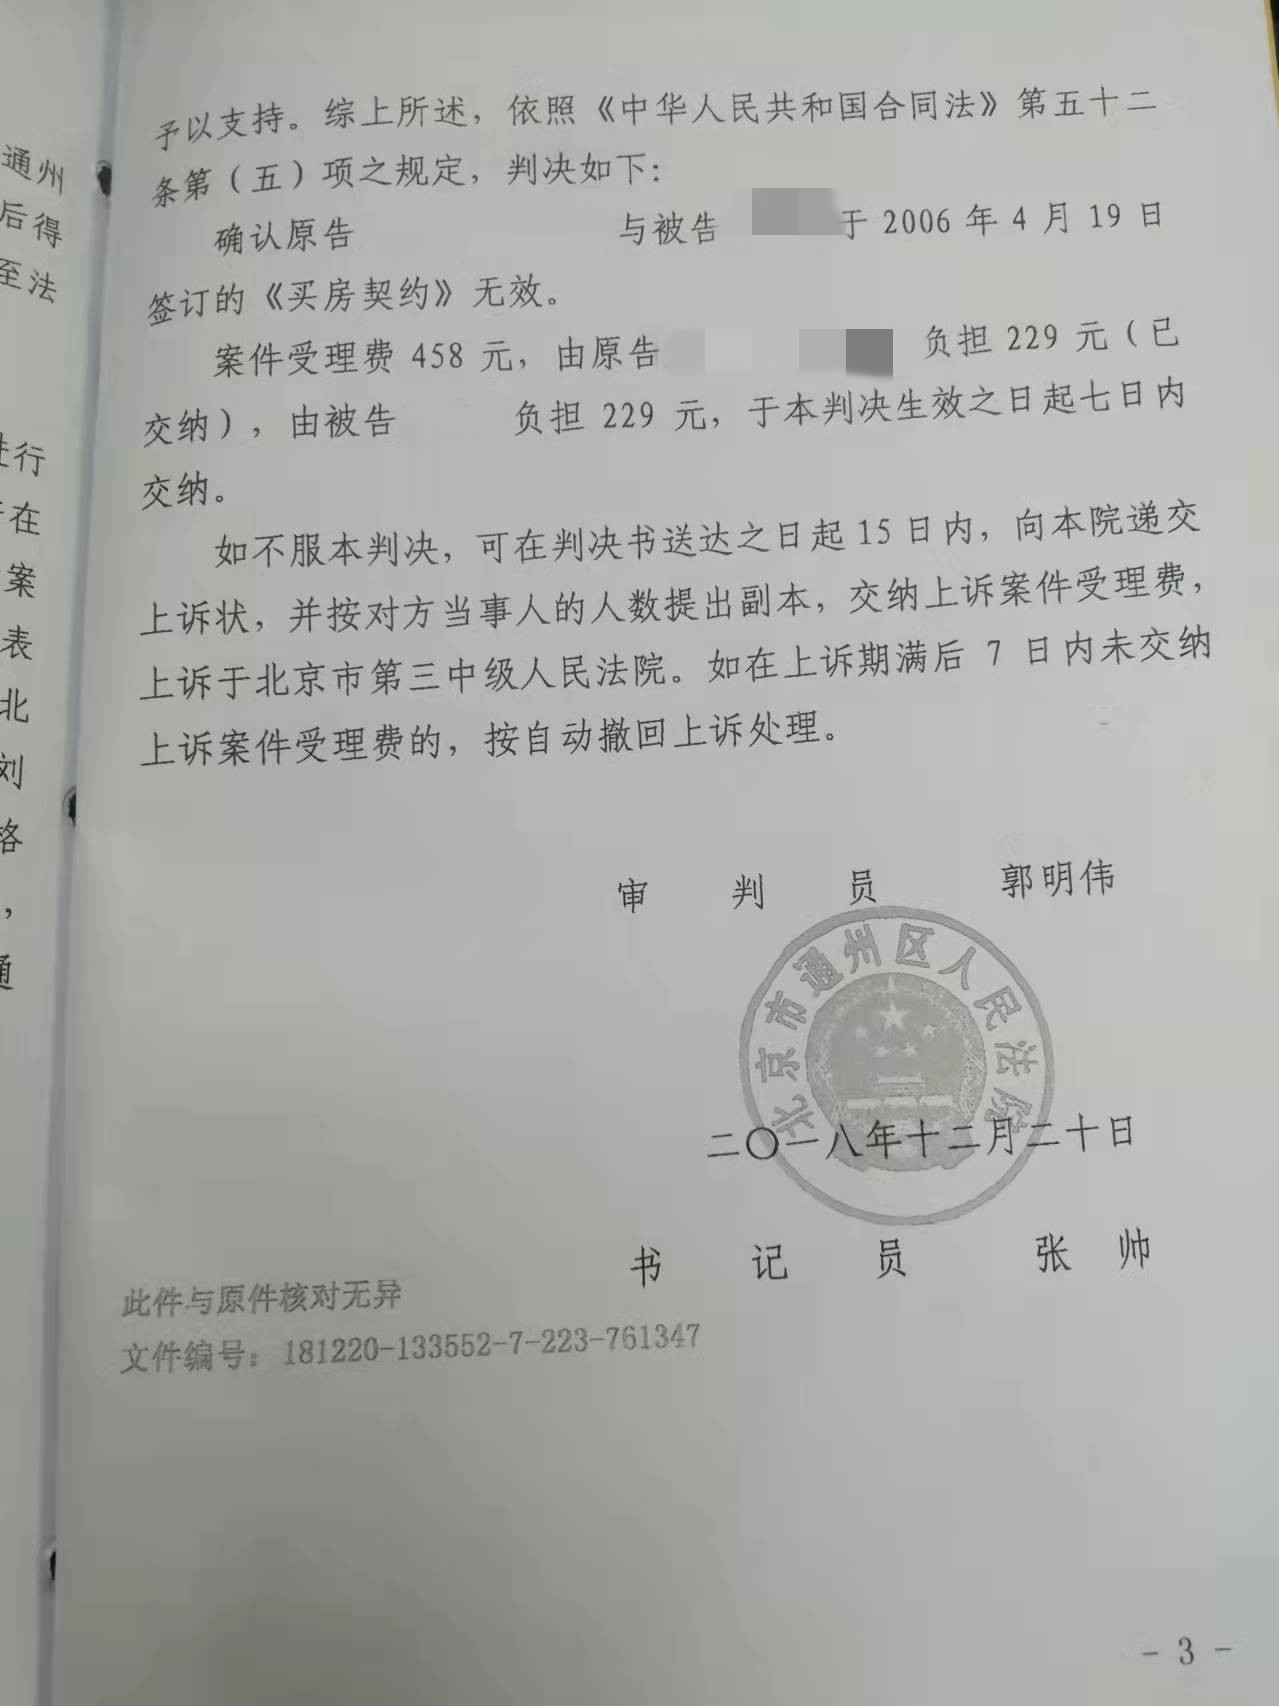 外地人购买北京农村私有房屋后遇困，京云律师助其维权